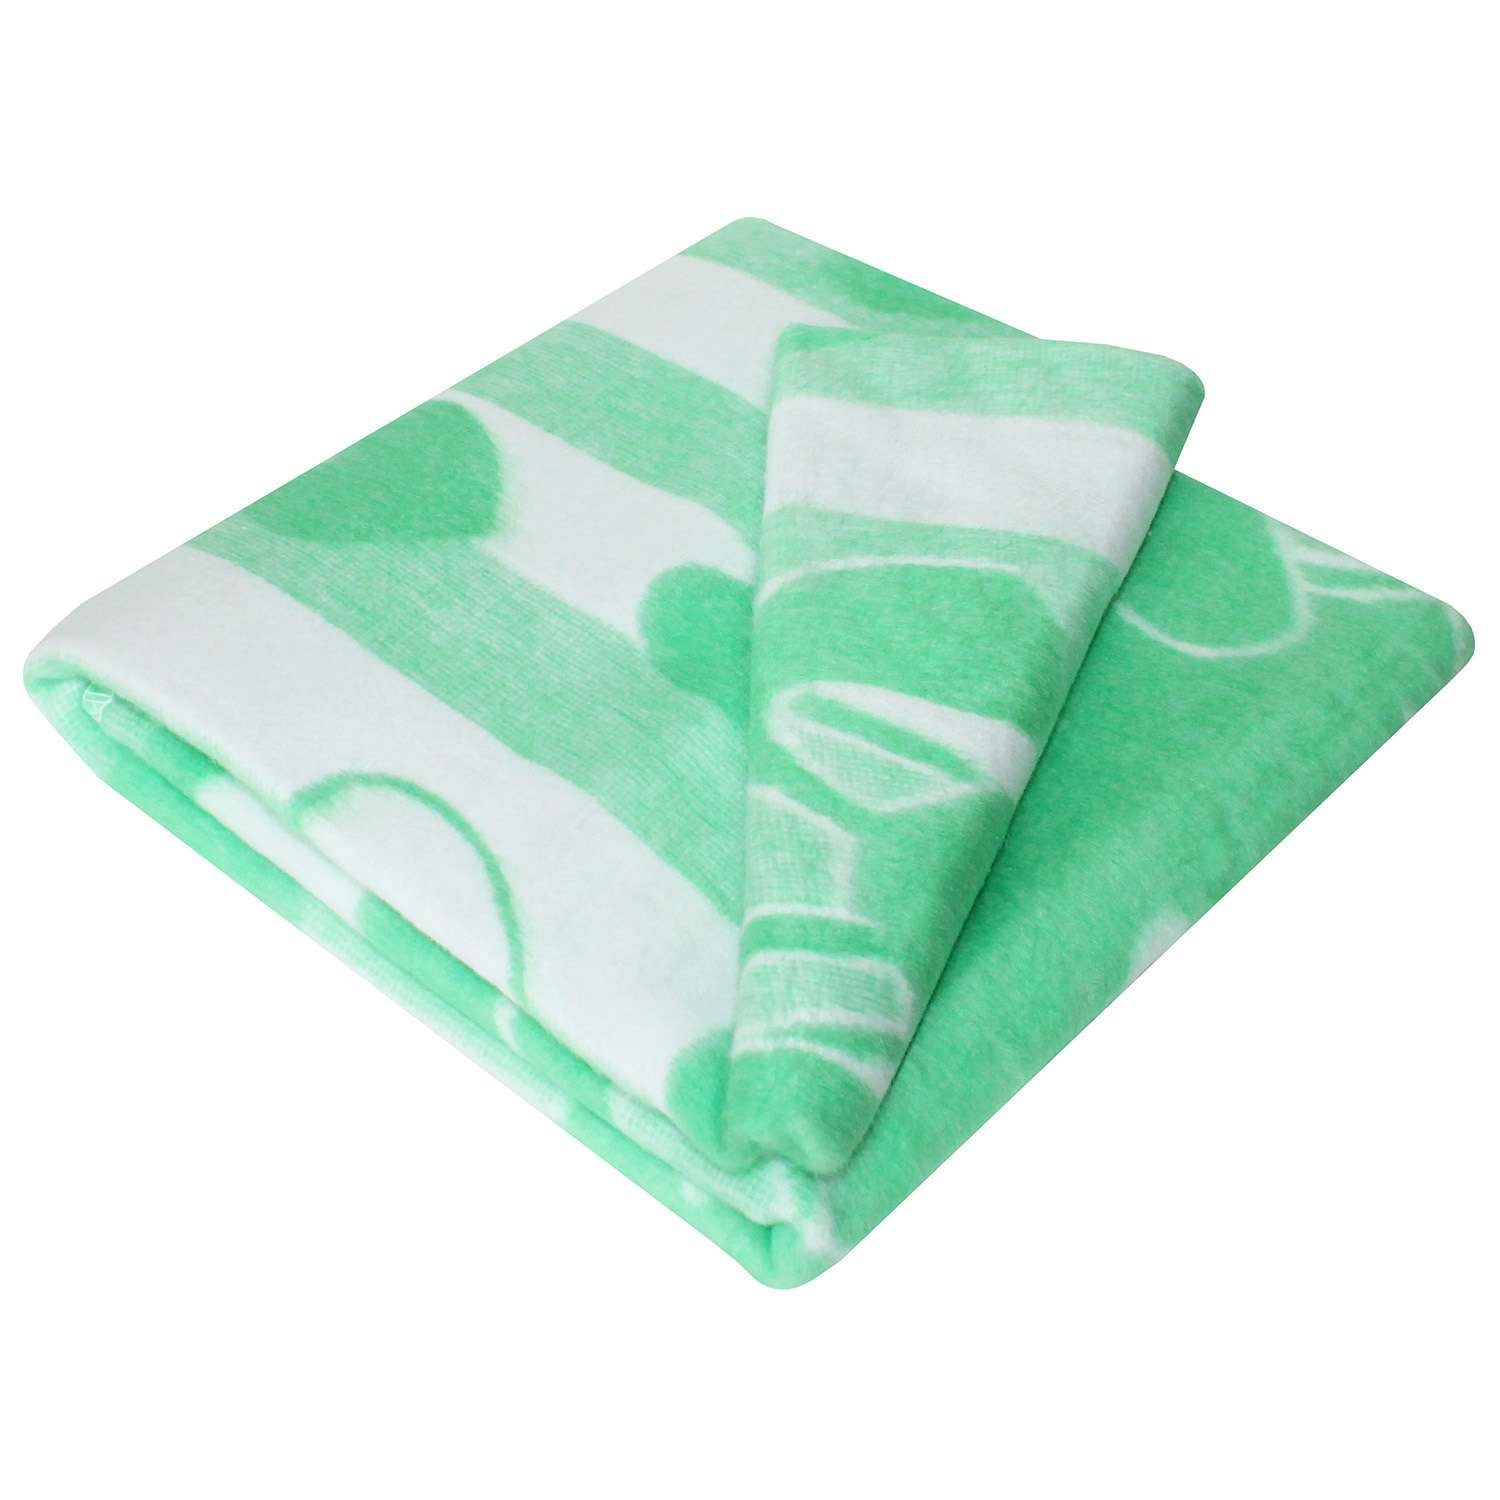 Одеяло байковое Ермошка Зайкин сон Зеленое 57-4 ЕТОЖ - фото 3